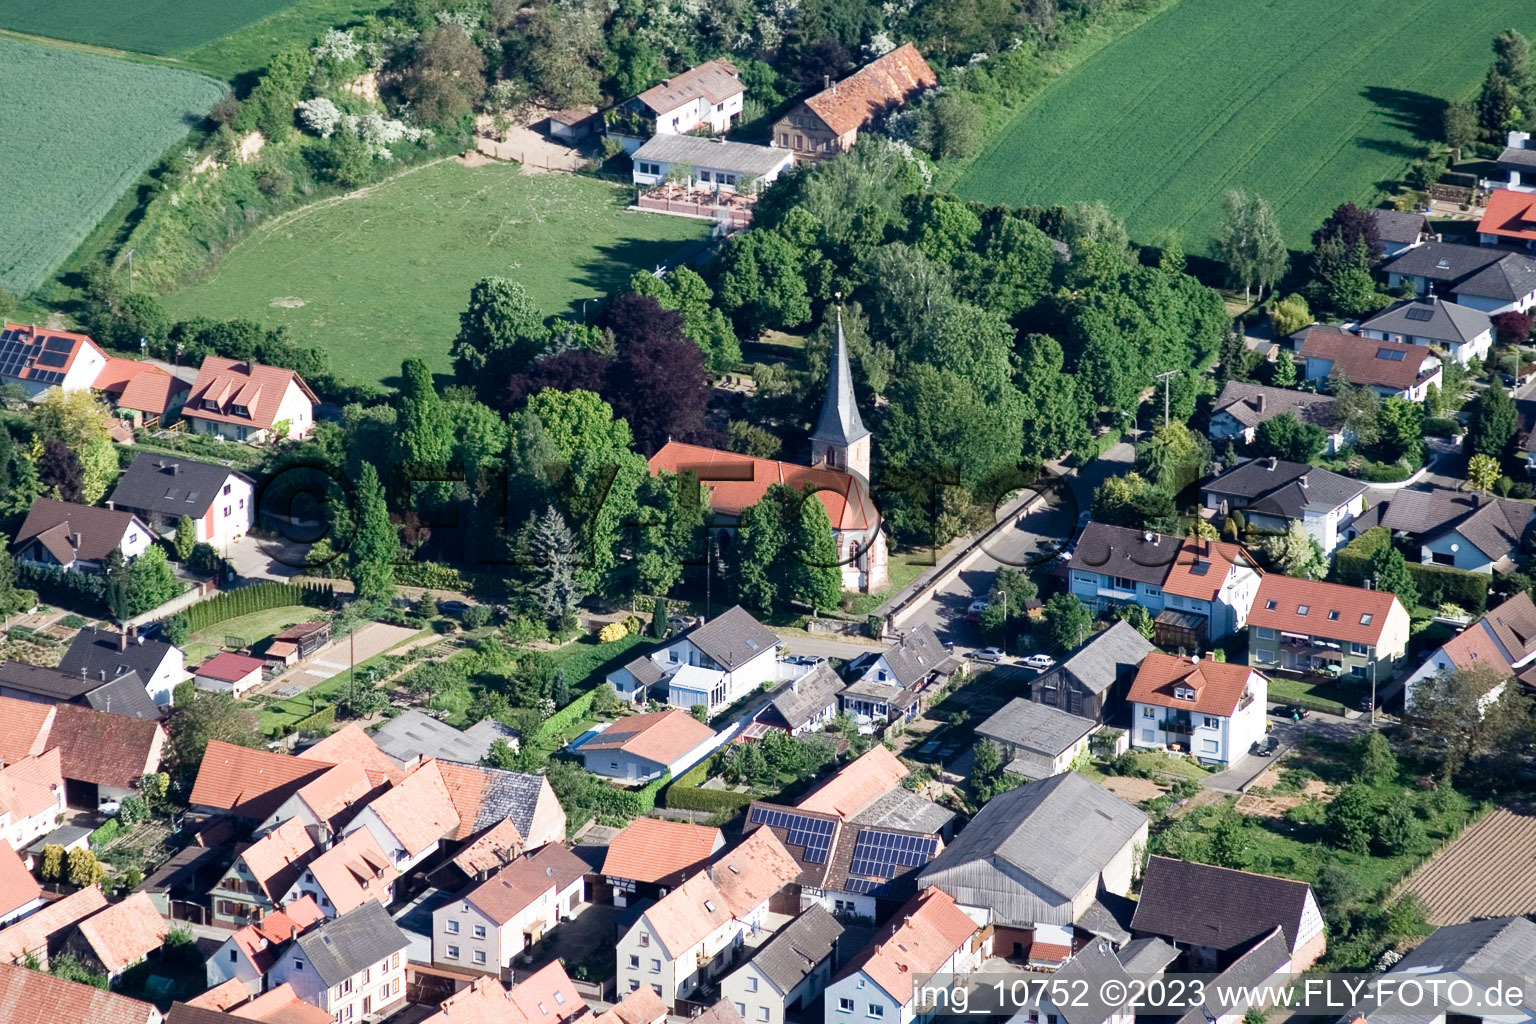 Vue aérienne de Église du sud-est à Freckenfeld dans le département Rhénanie-Palatinat, Allemagne